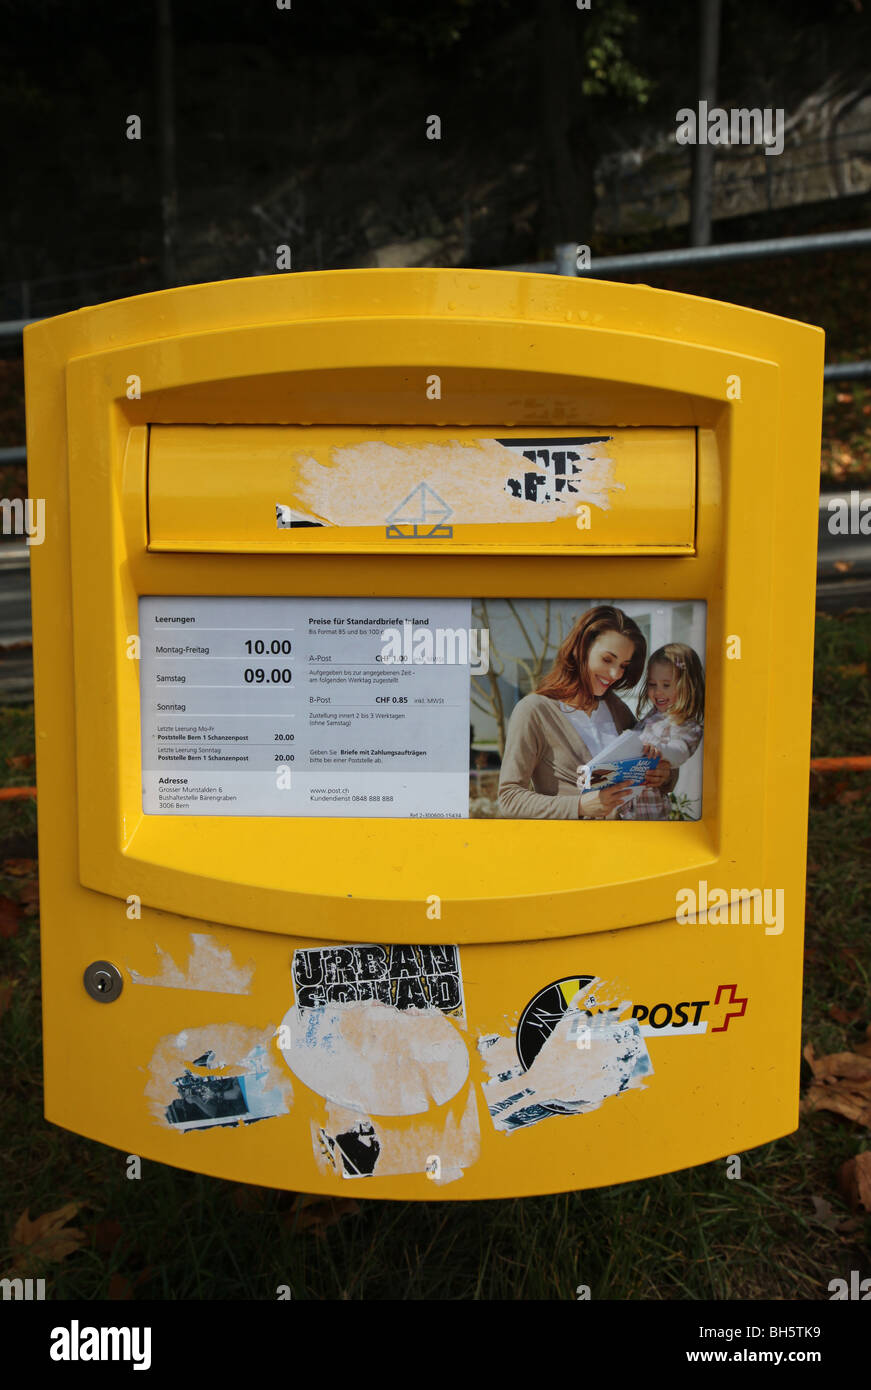 Postbox, rue de Berne, Suisse Banque D'Images